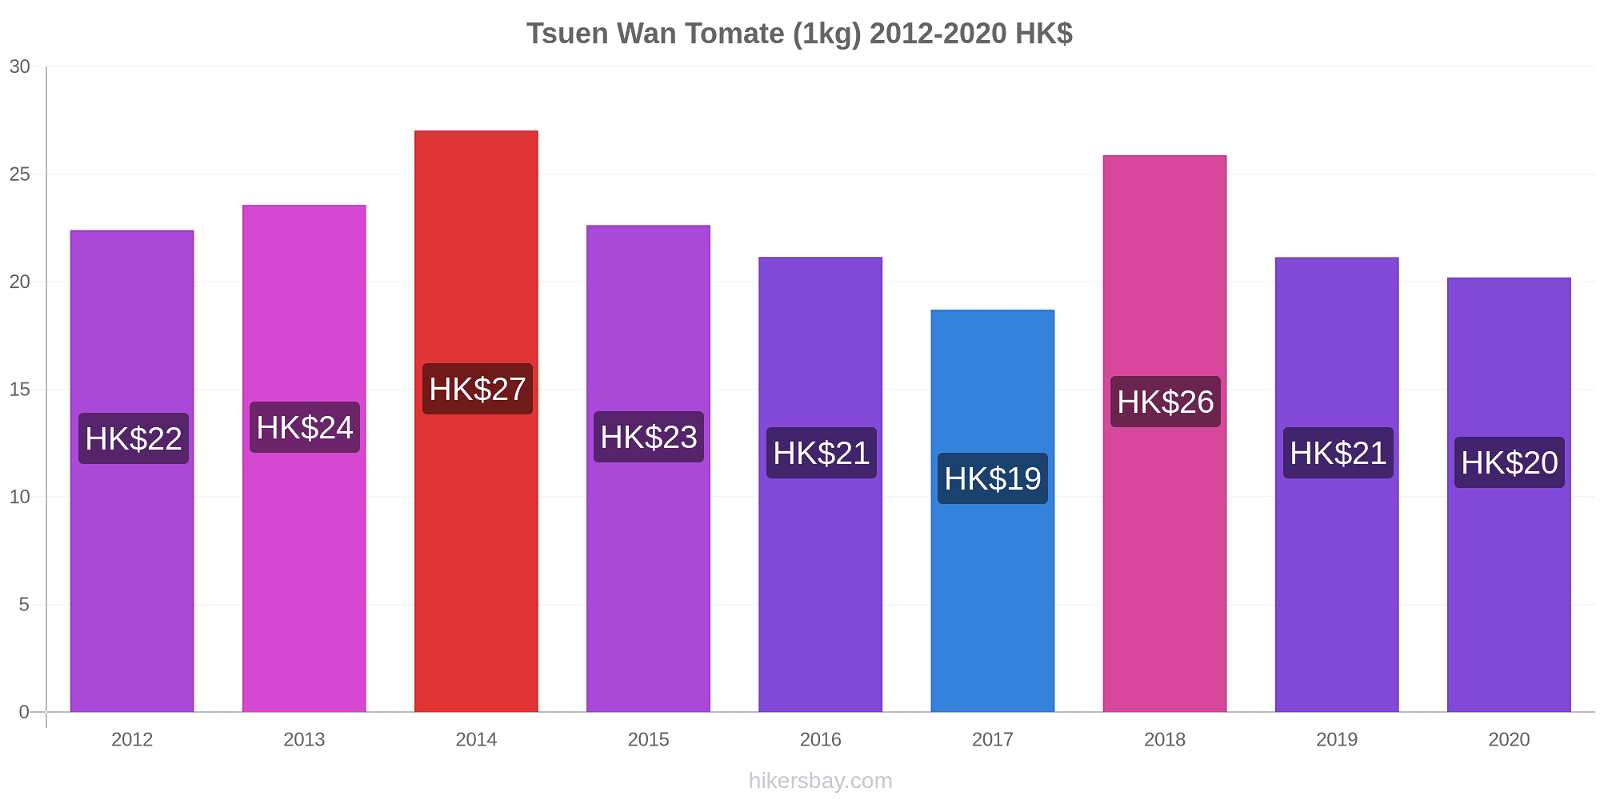 Tsuen Wan variação de preço Tomate (1kg) hikersbay.com